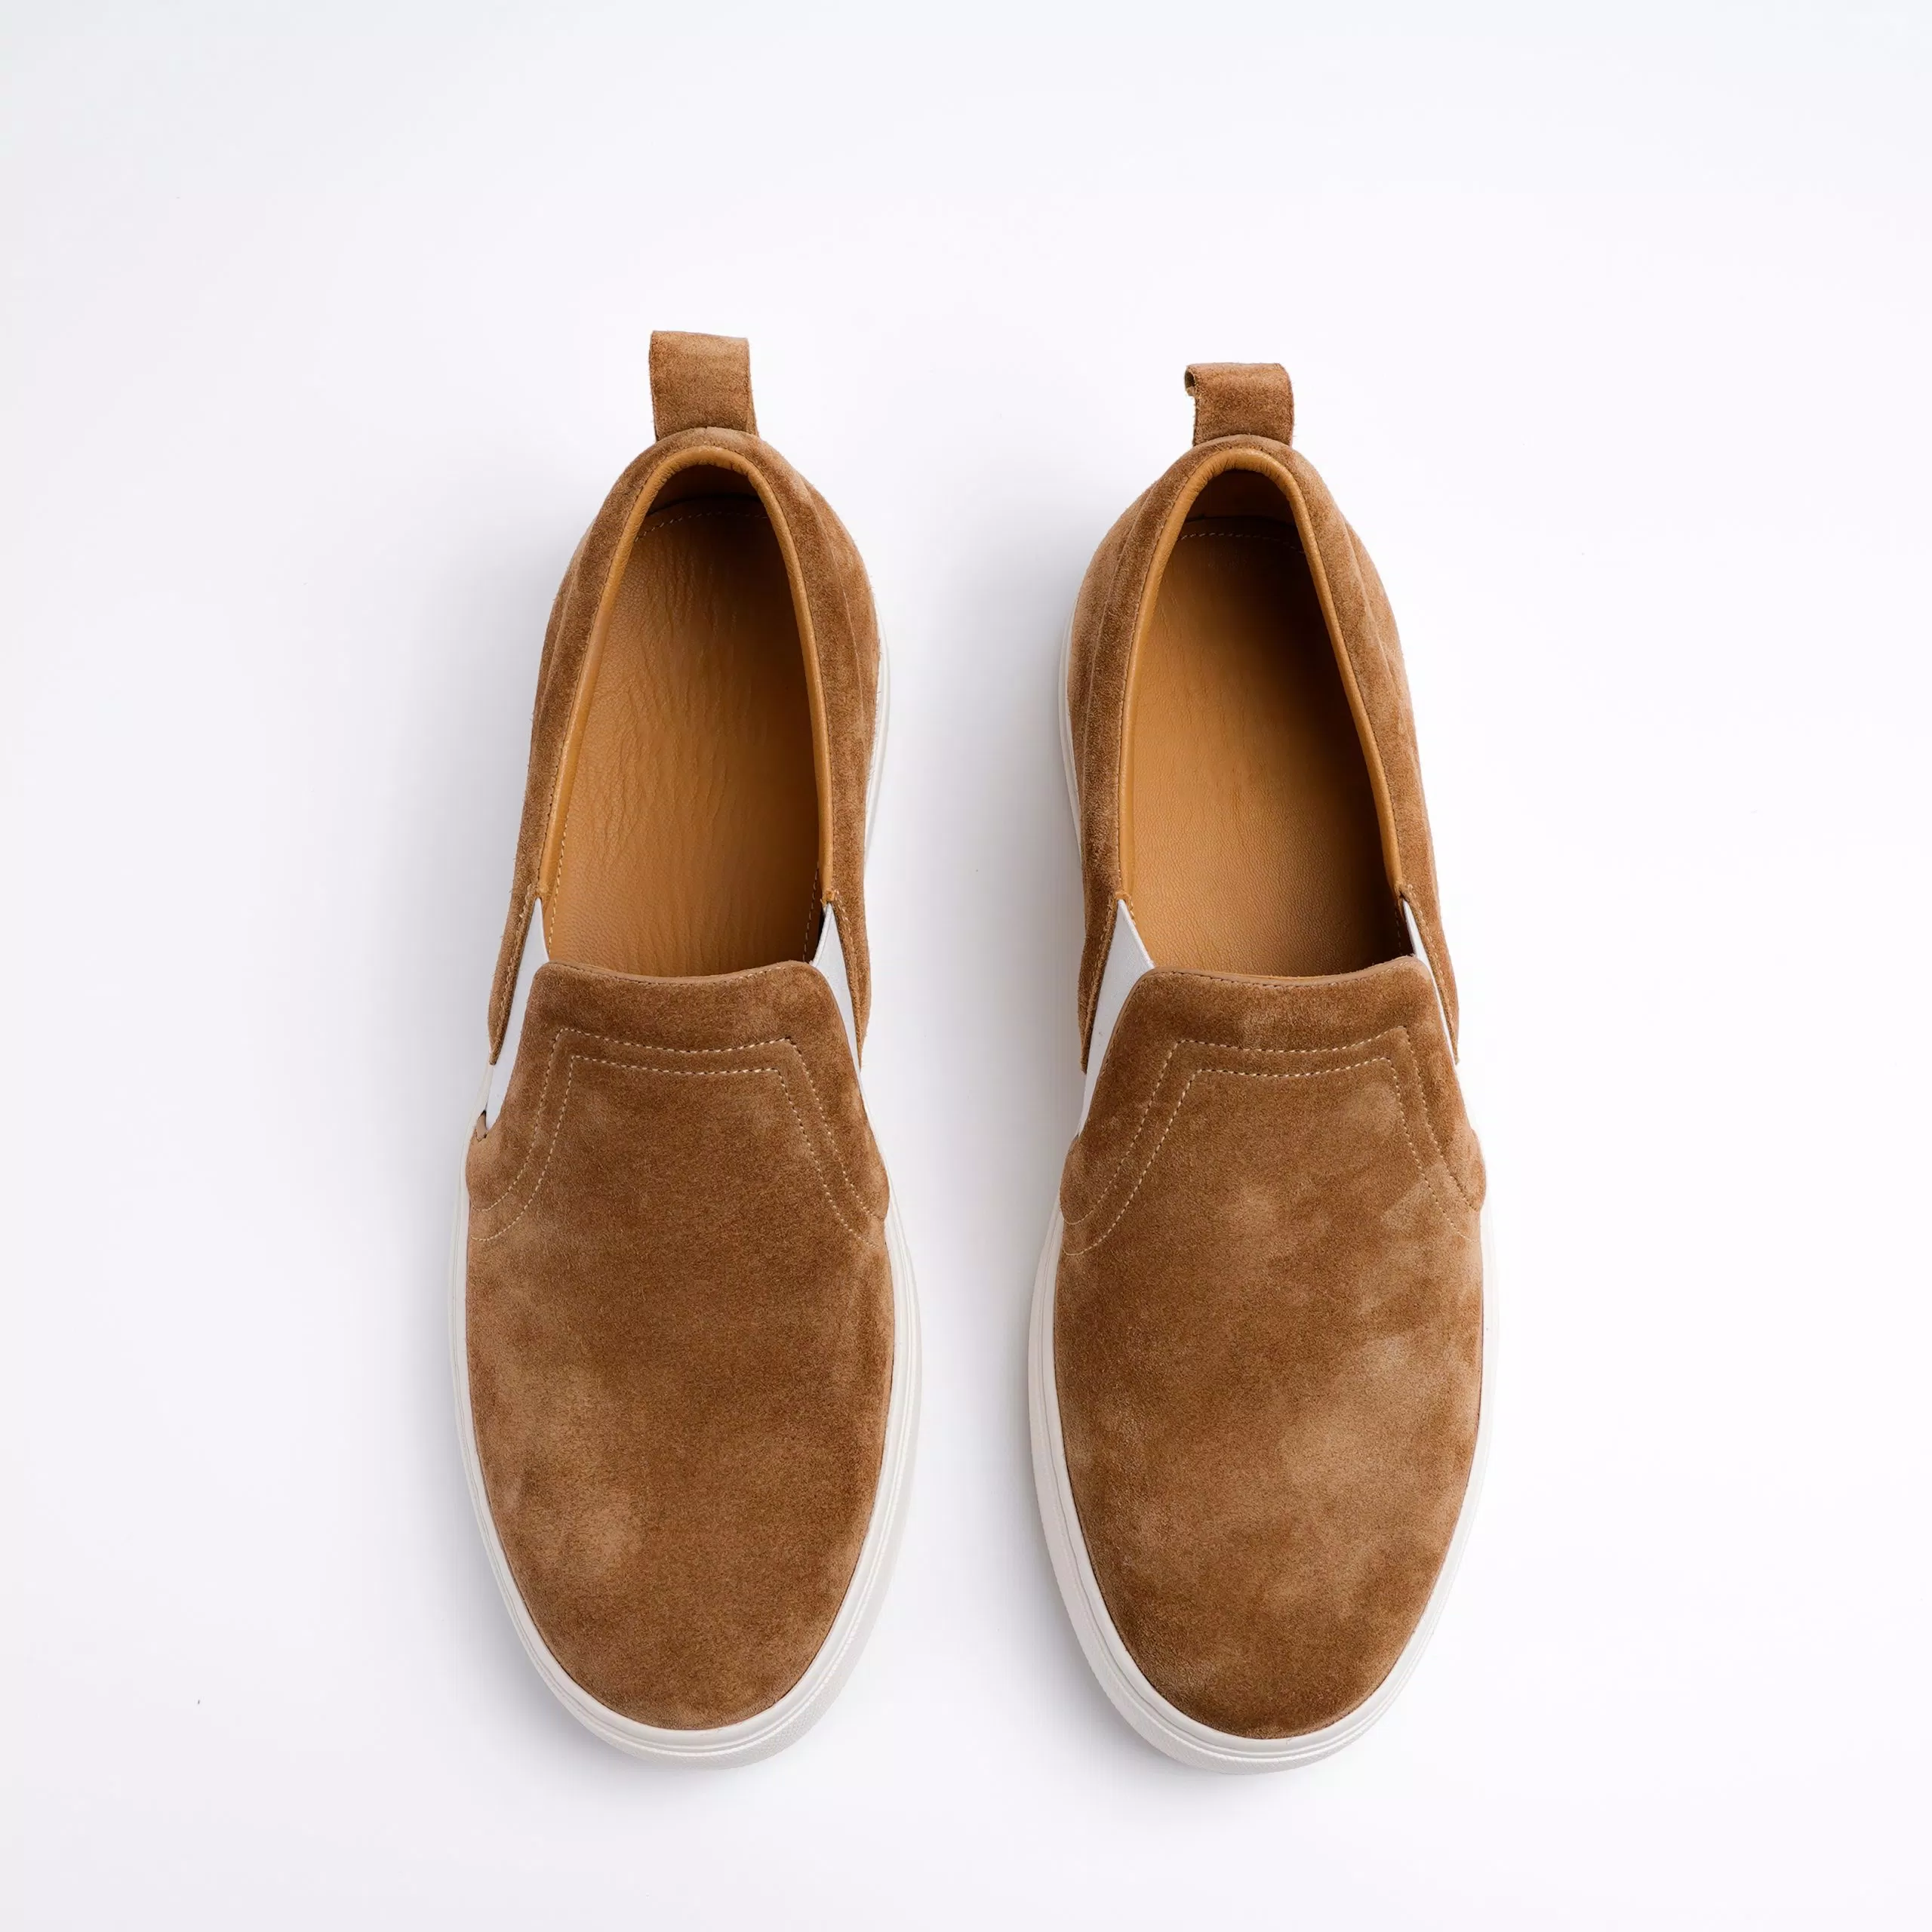 Giày slip-ons đa năng - sự thoải mái và phong cách trong mọi hoàn cảnh (Nguồn: Internet)